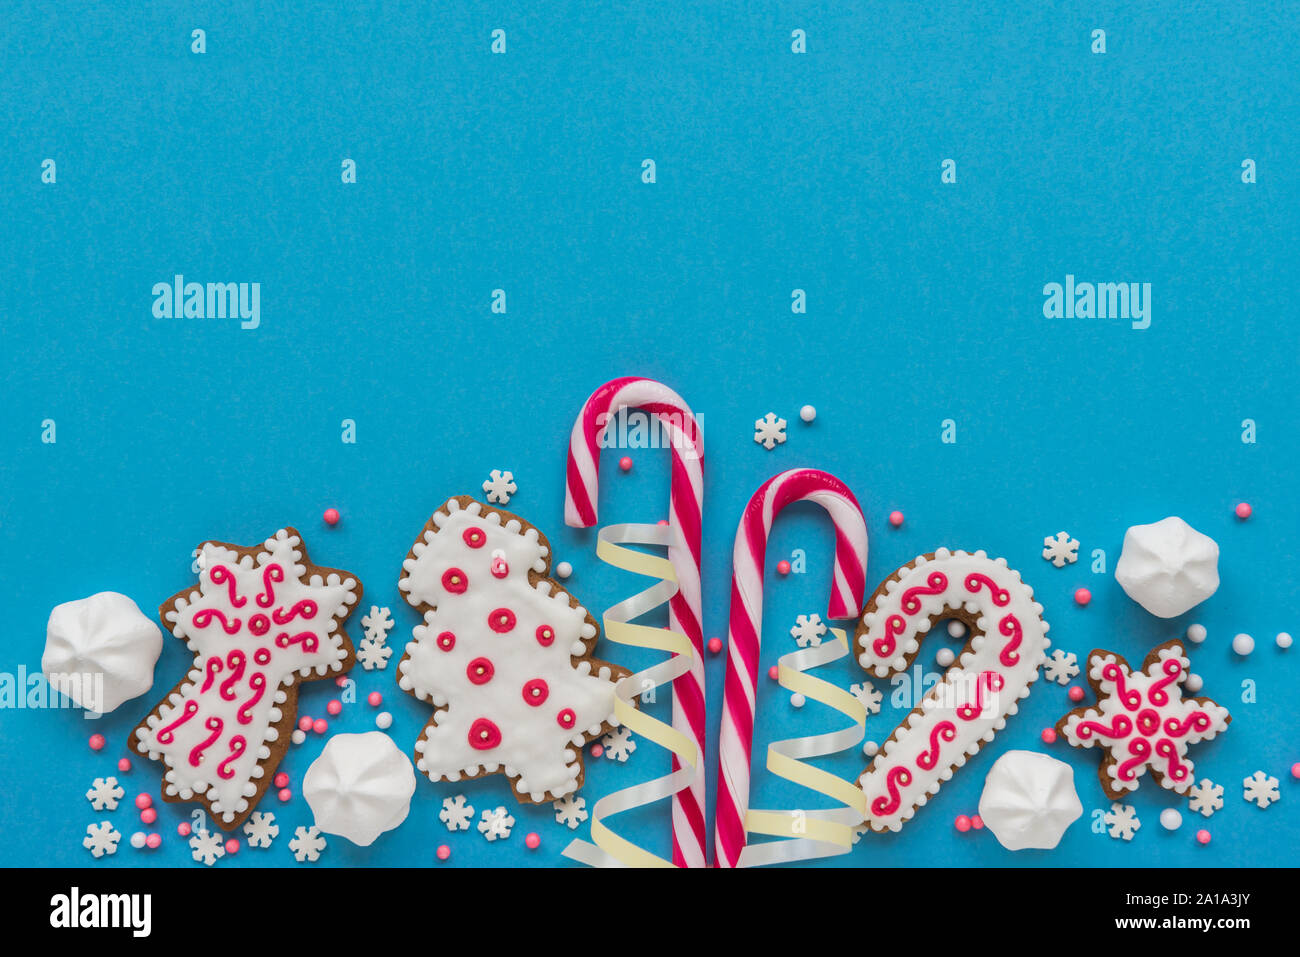 Décorations de Noël, des biscuits au gingembre et des cannes de bonbon et de meringues sur fond bleu Banque D'Images